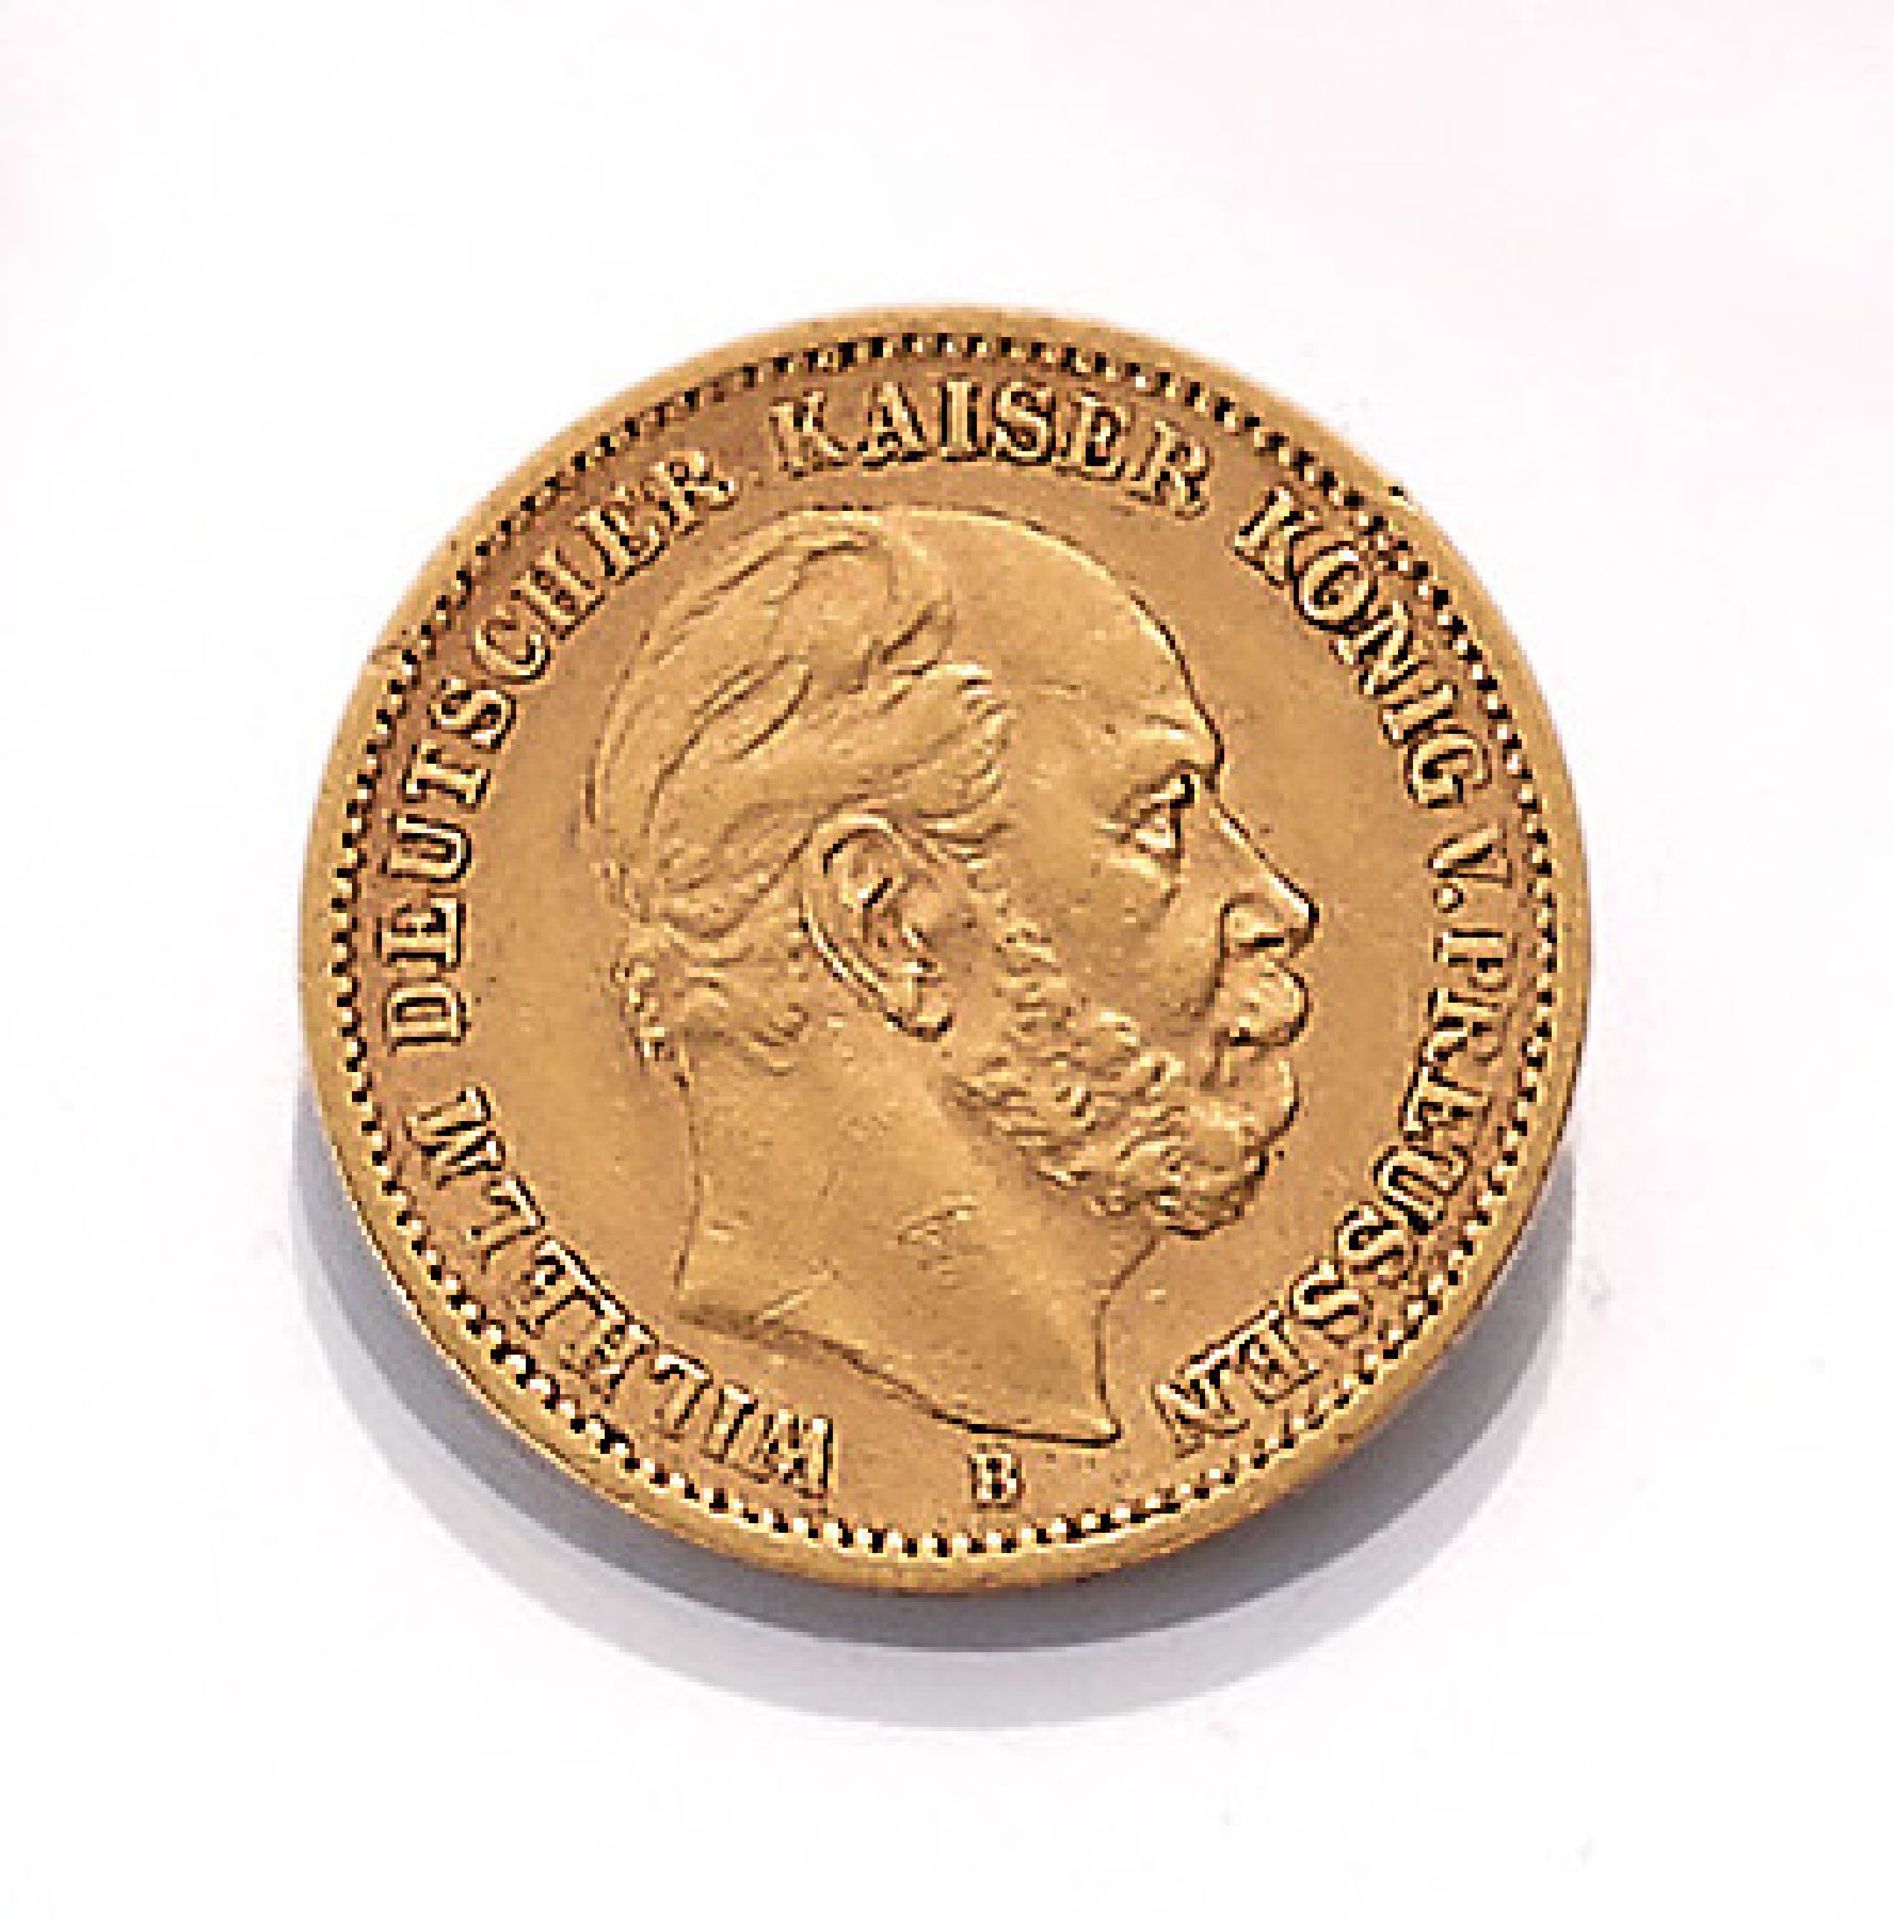 Goldmünze, 20 Mark, Deutsches Reich, 1873, Wilhelm Deutscher Kaiser König von Preussen, Prägemarke